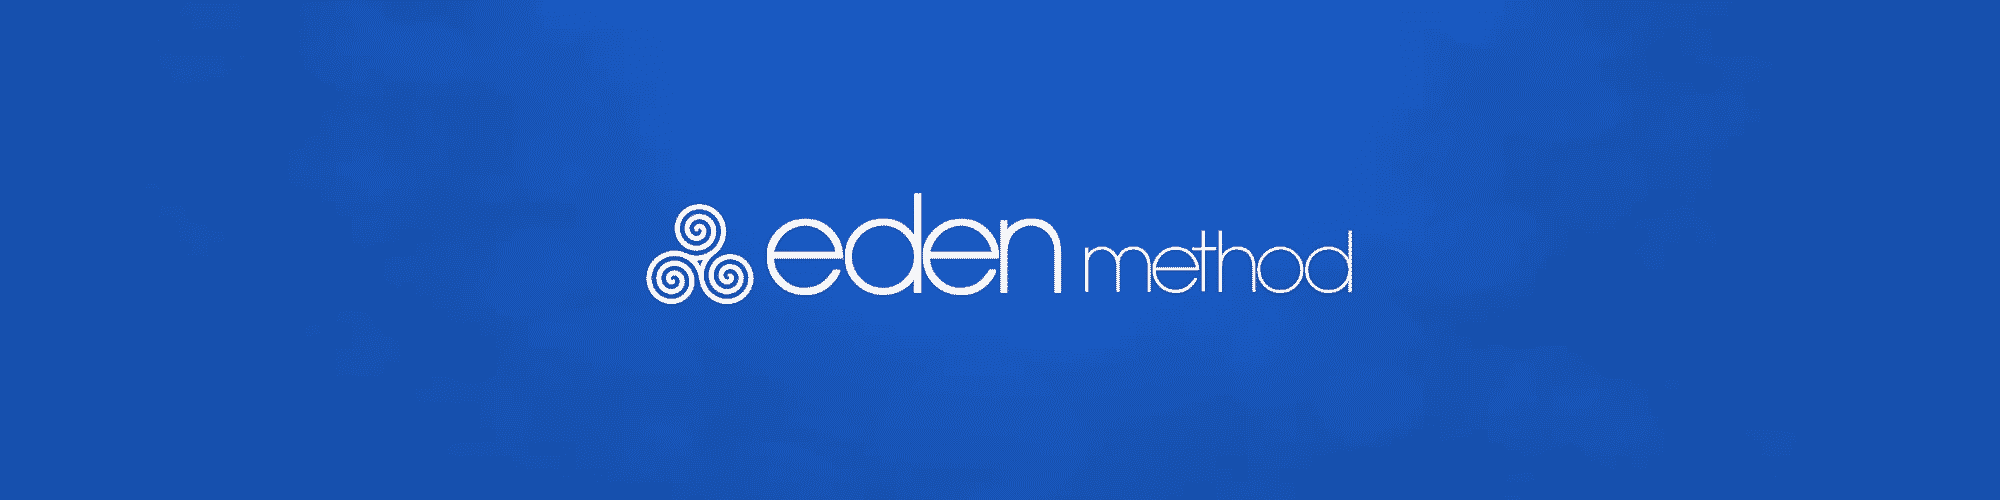 Eden Method logo